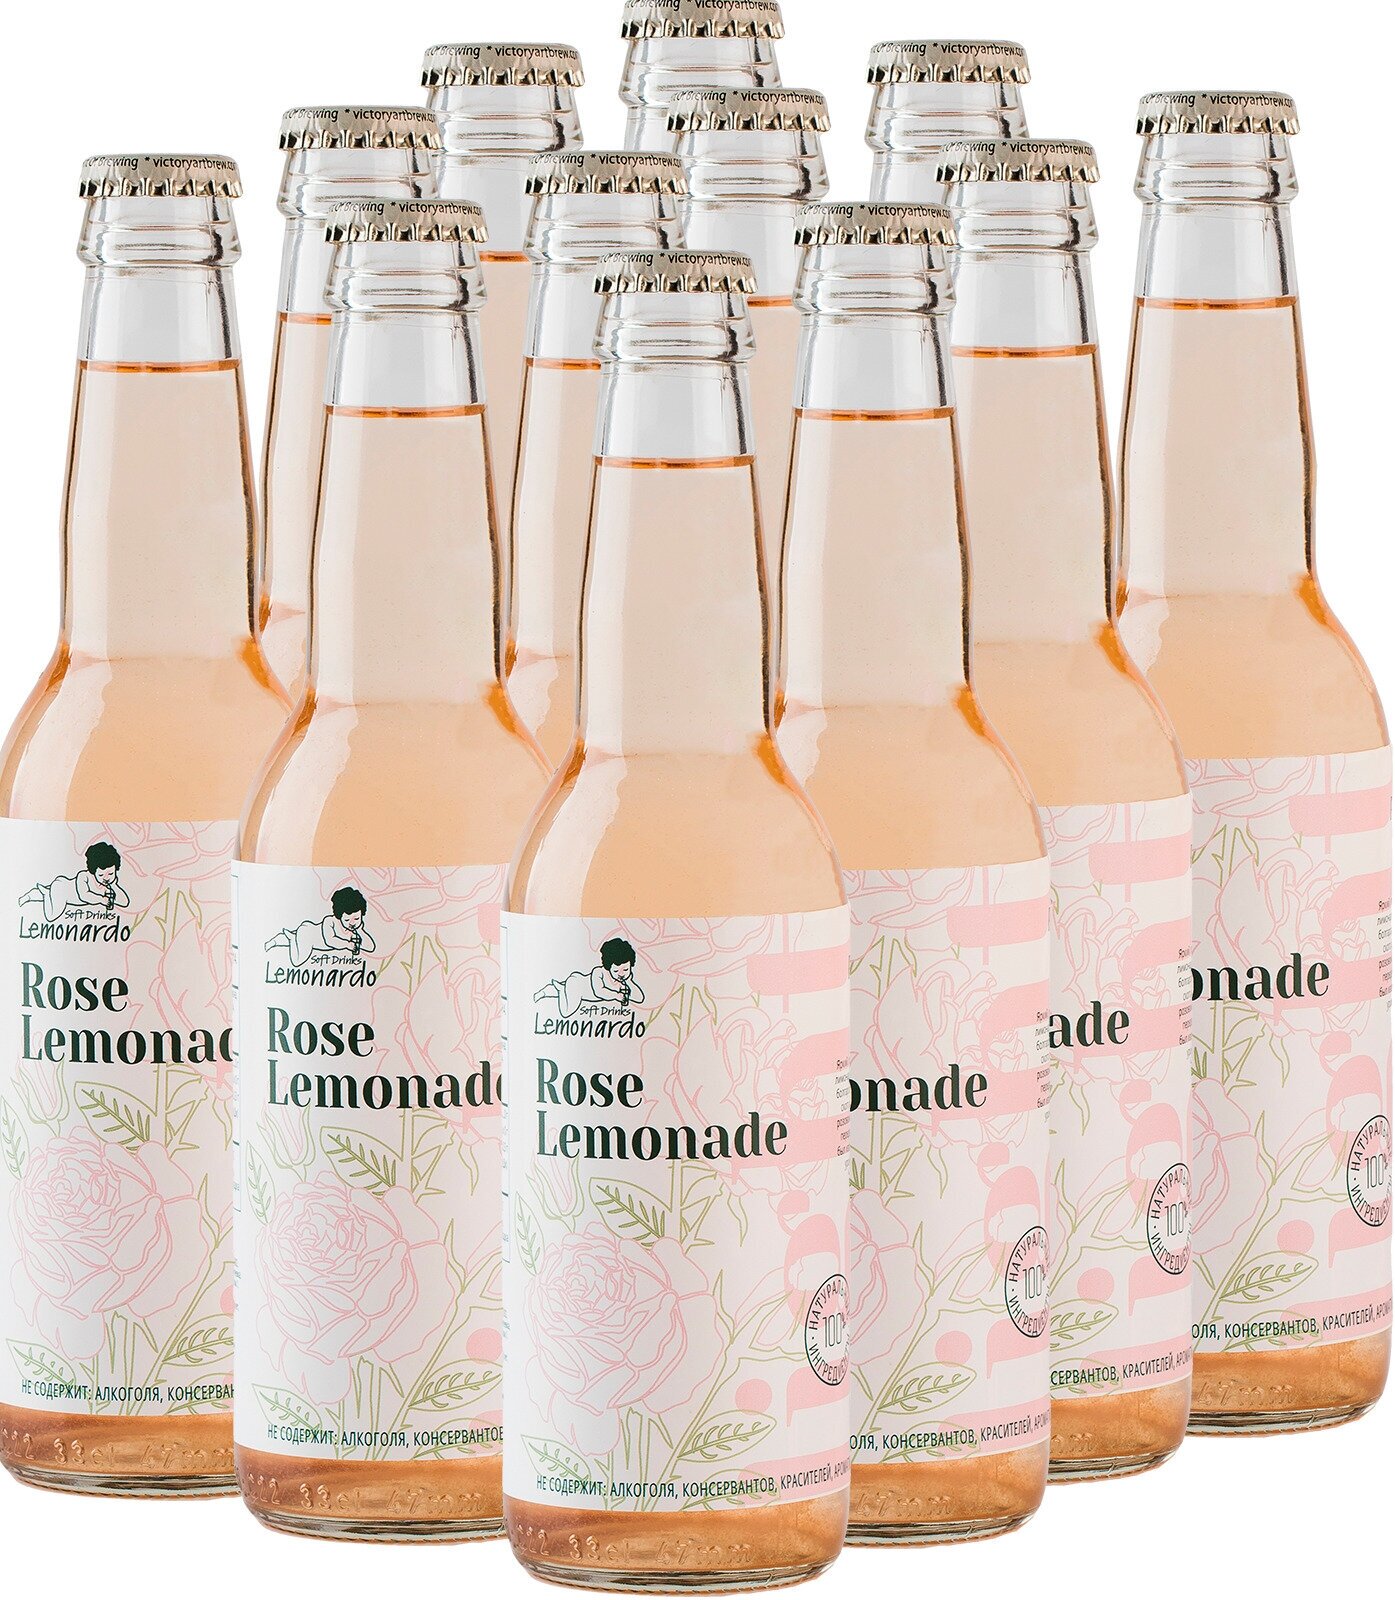 Натуральный розовый лимонад со стевией/ Lemonardo Rose Lemonade Light, 330мл. 12шт